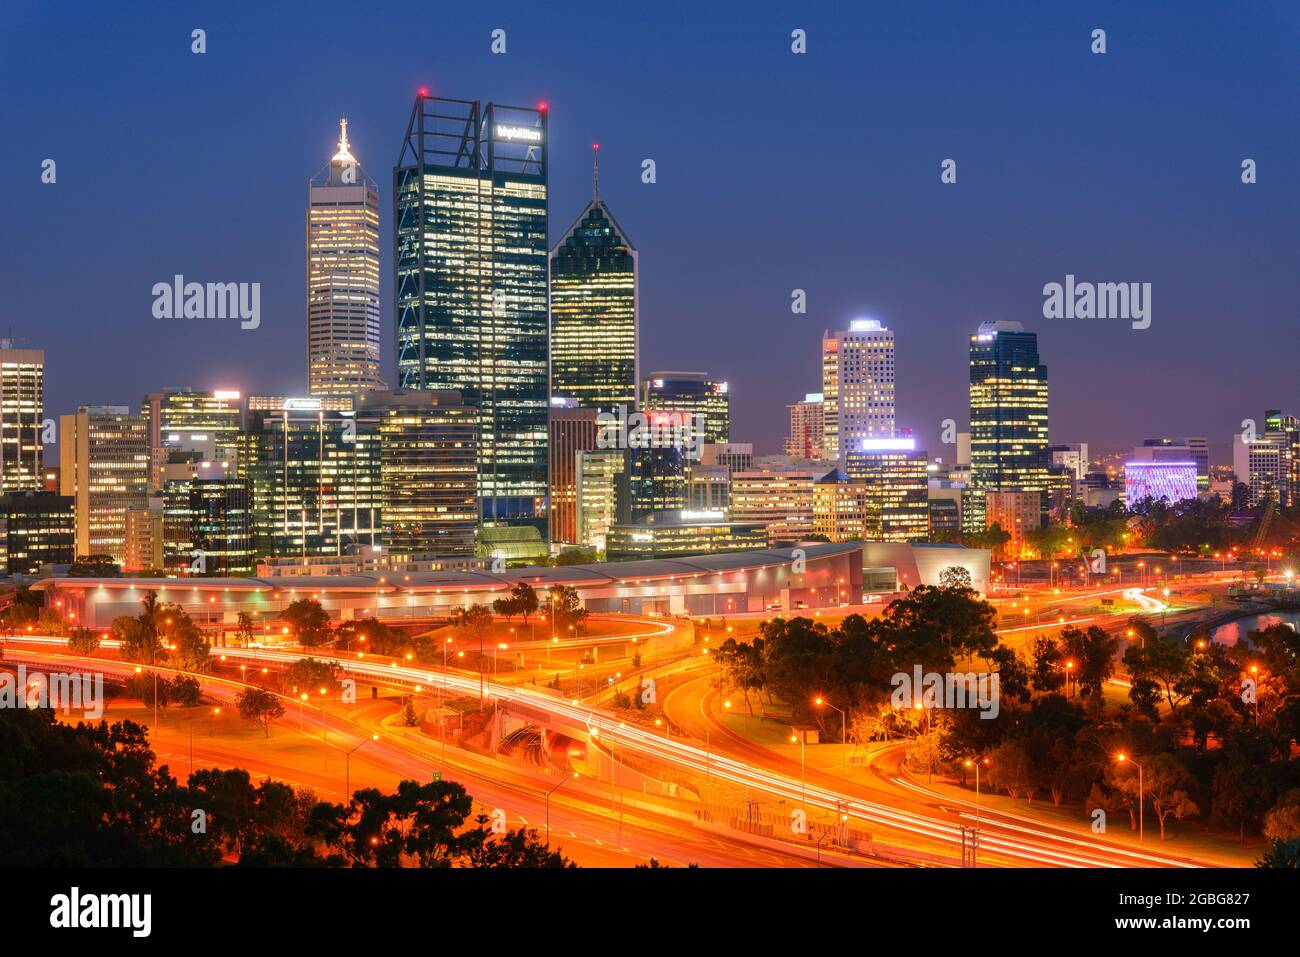 Vue en soirée sur les gratte-ciels de la ville de Perth et Mitchell Freeway depuis Kings Park. Perth est une ville moderne et dynamique et est la capitale de l'Australie occidentale. Banque D'Images